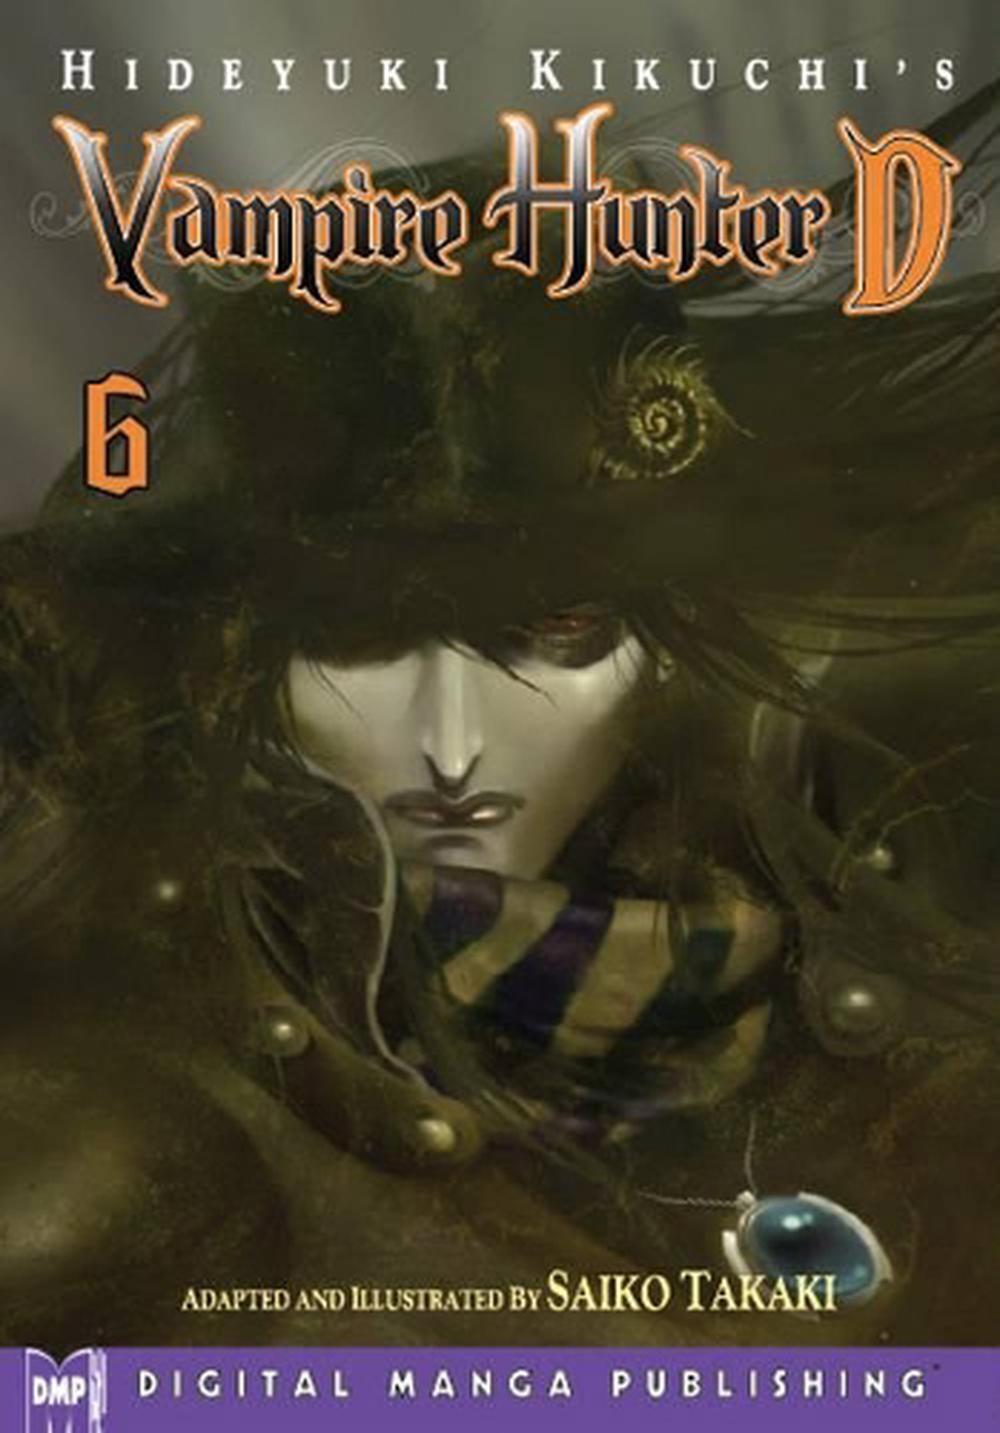 Hideyuki Kikuchi's Vampire Hunter D Manga Volume 6 by Hideyuki Kikuchi (English)